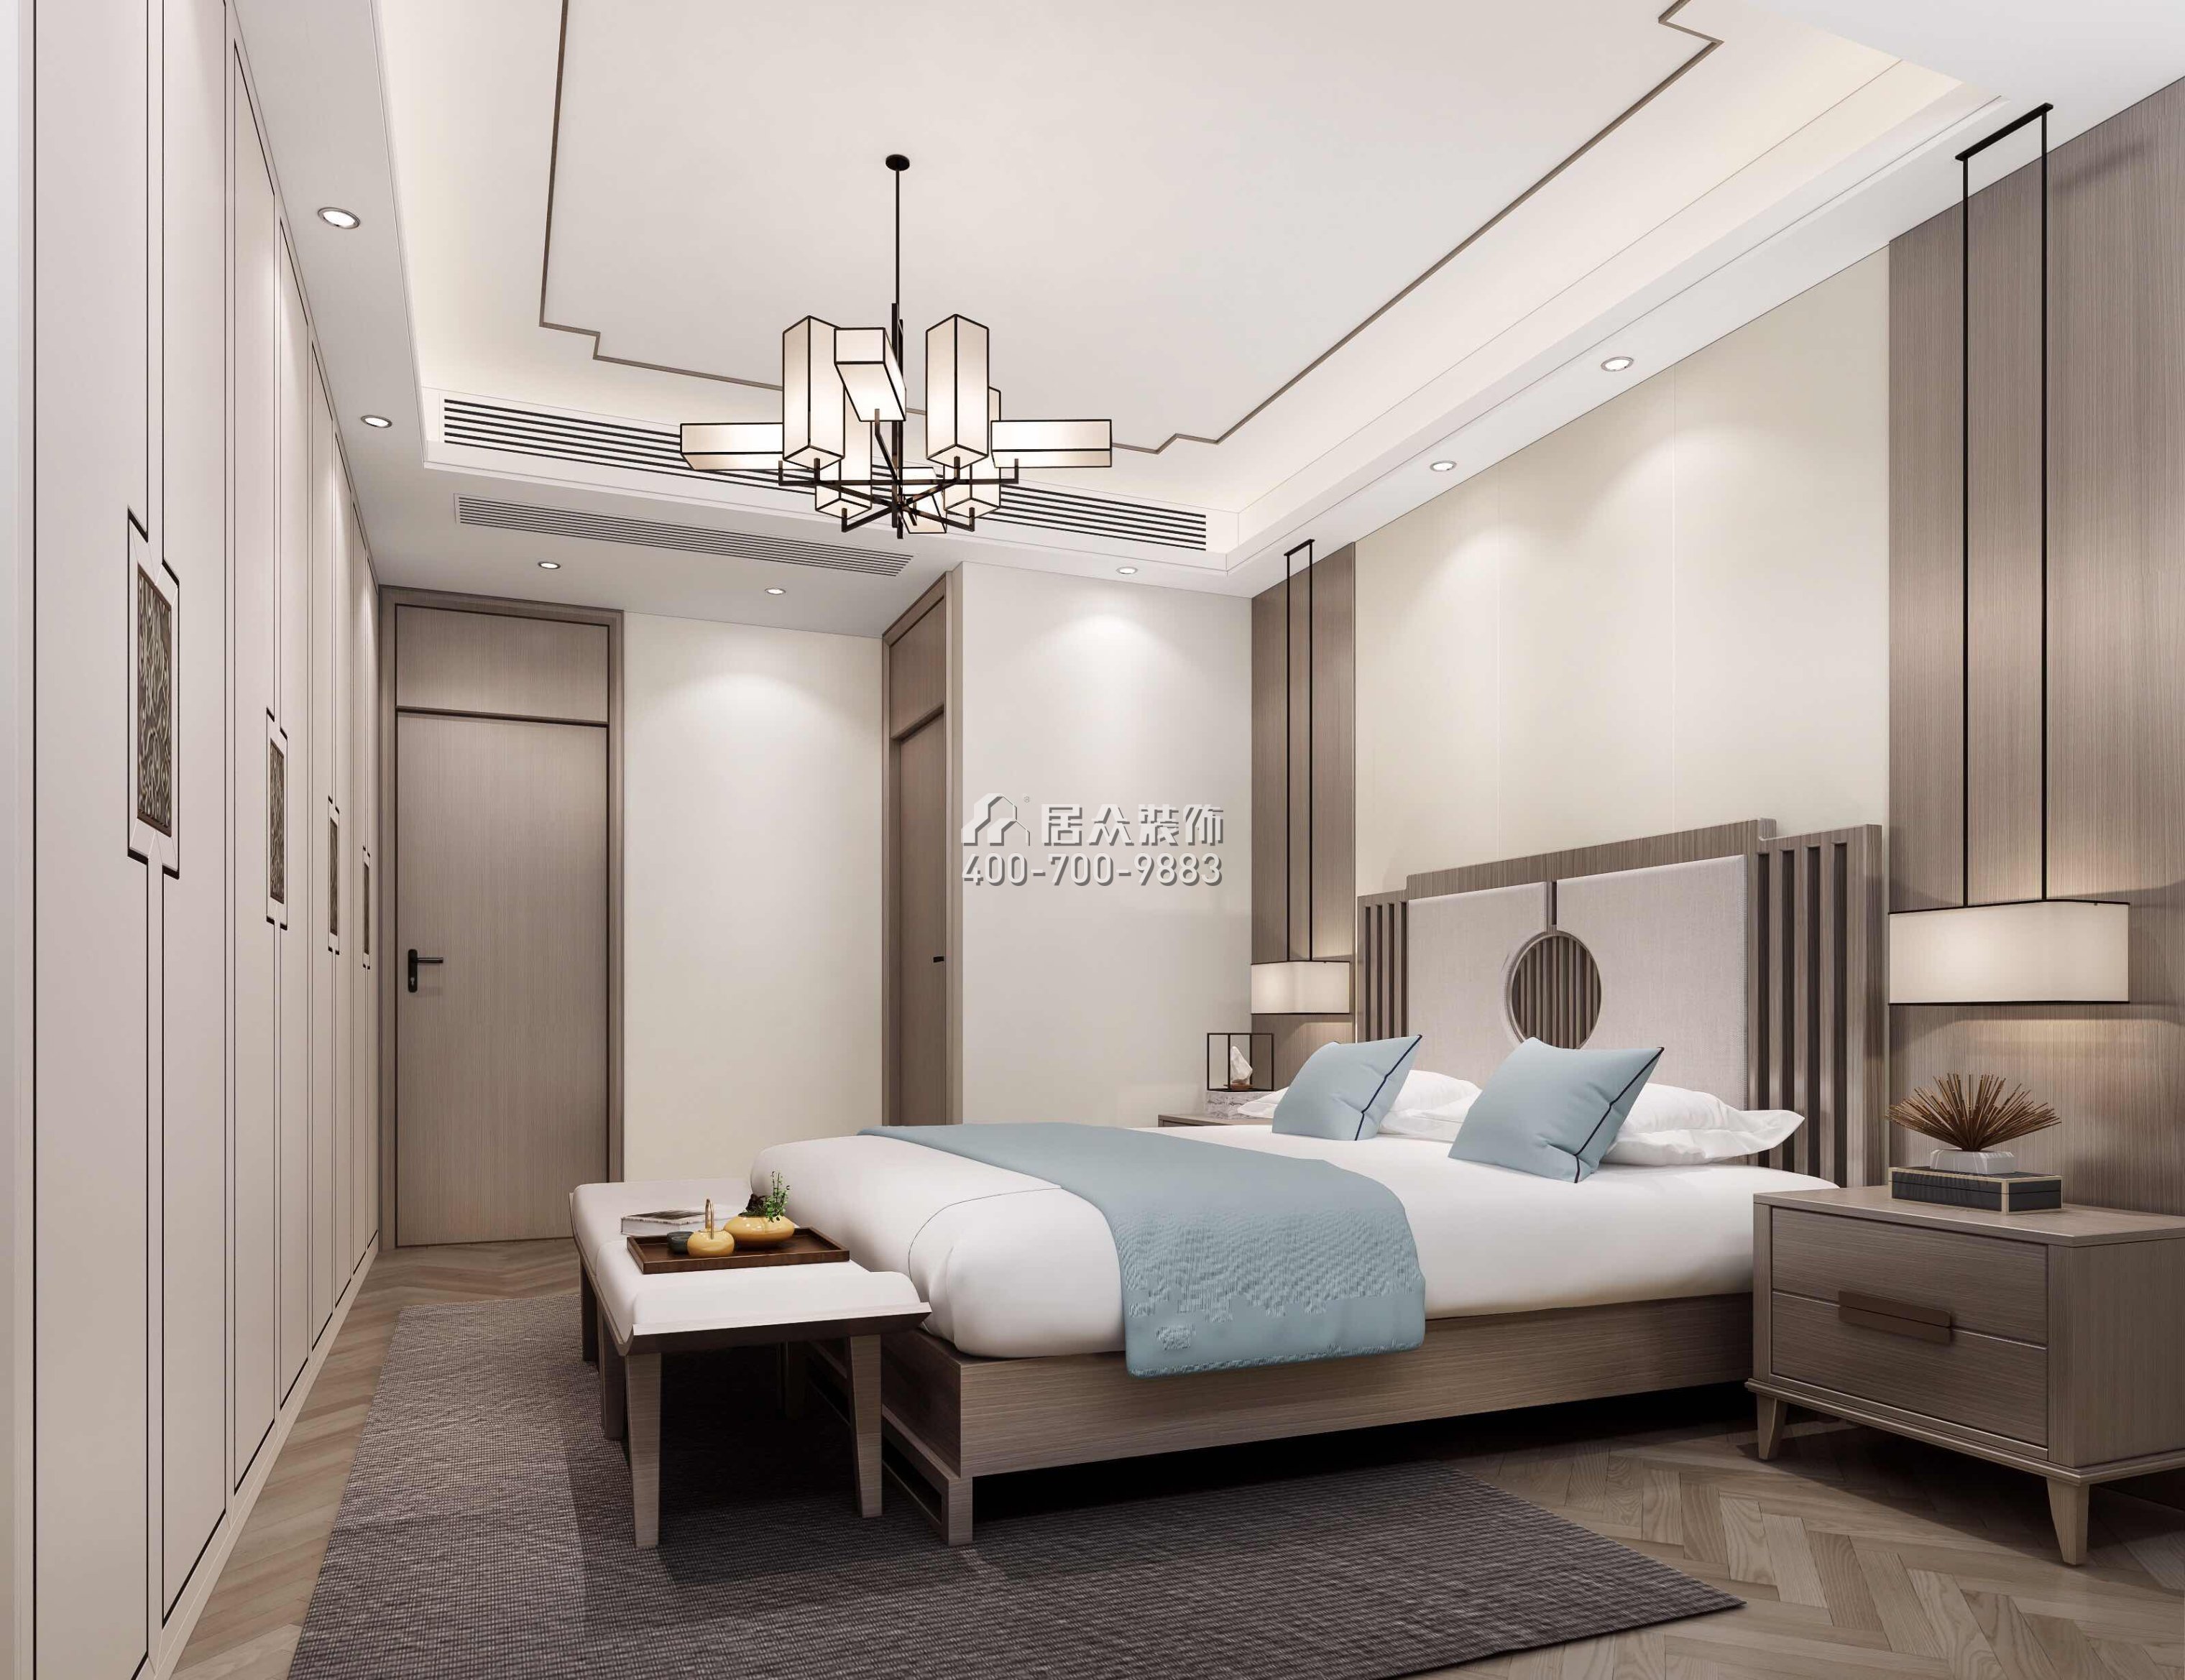 香山里花园五期180平方米中式风格平层户型卧室装修效果图